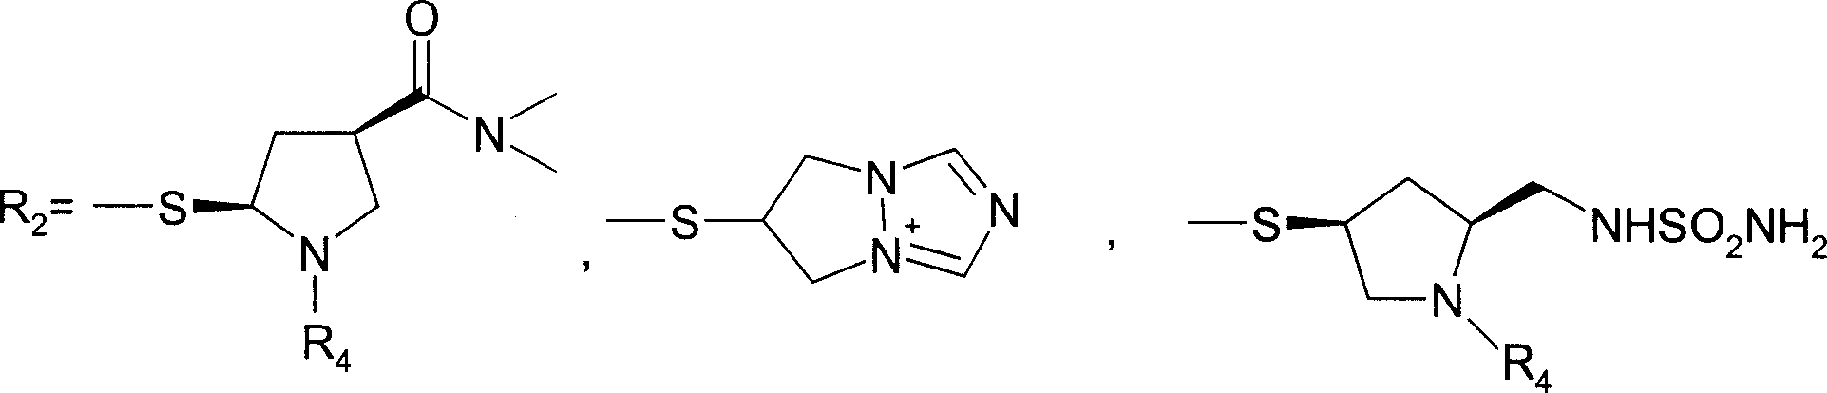 4-methyl-7-oxy-1-azabicyclo [3.2.0] hepta-2-olefin-2-carboxylic acid derivative preparation method